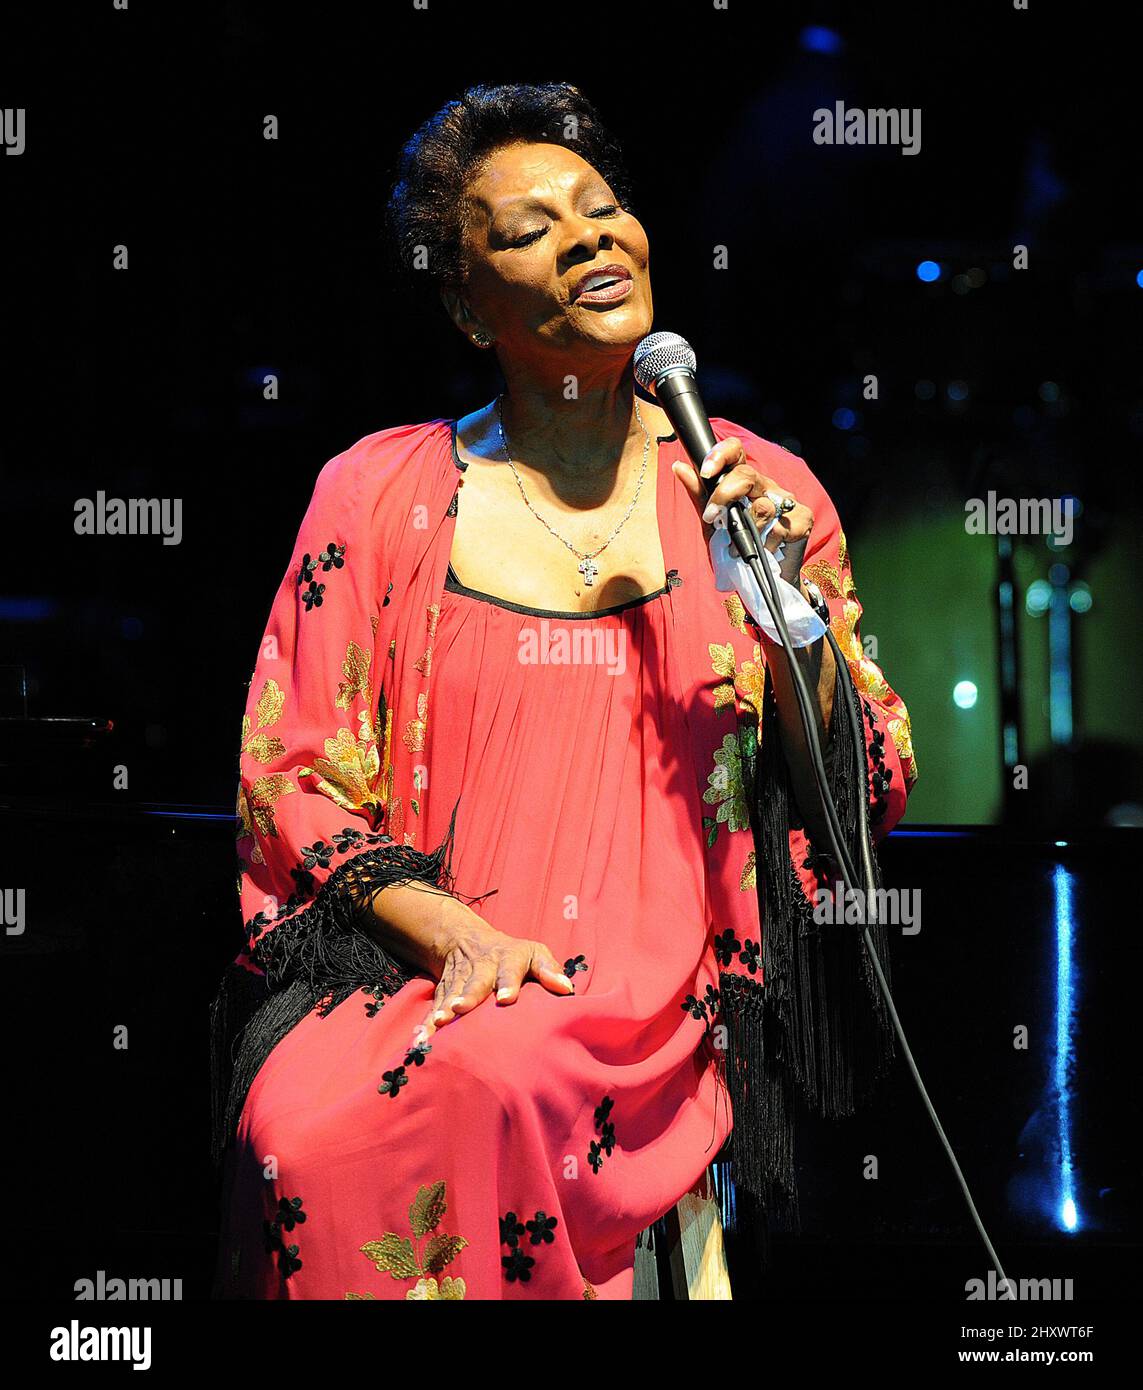 Dionne Warwick si esibisce sul palco presso la Dorton Arena di Raleigh, NC. Foto Stock